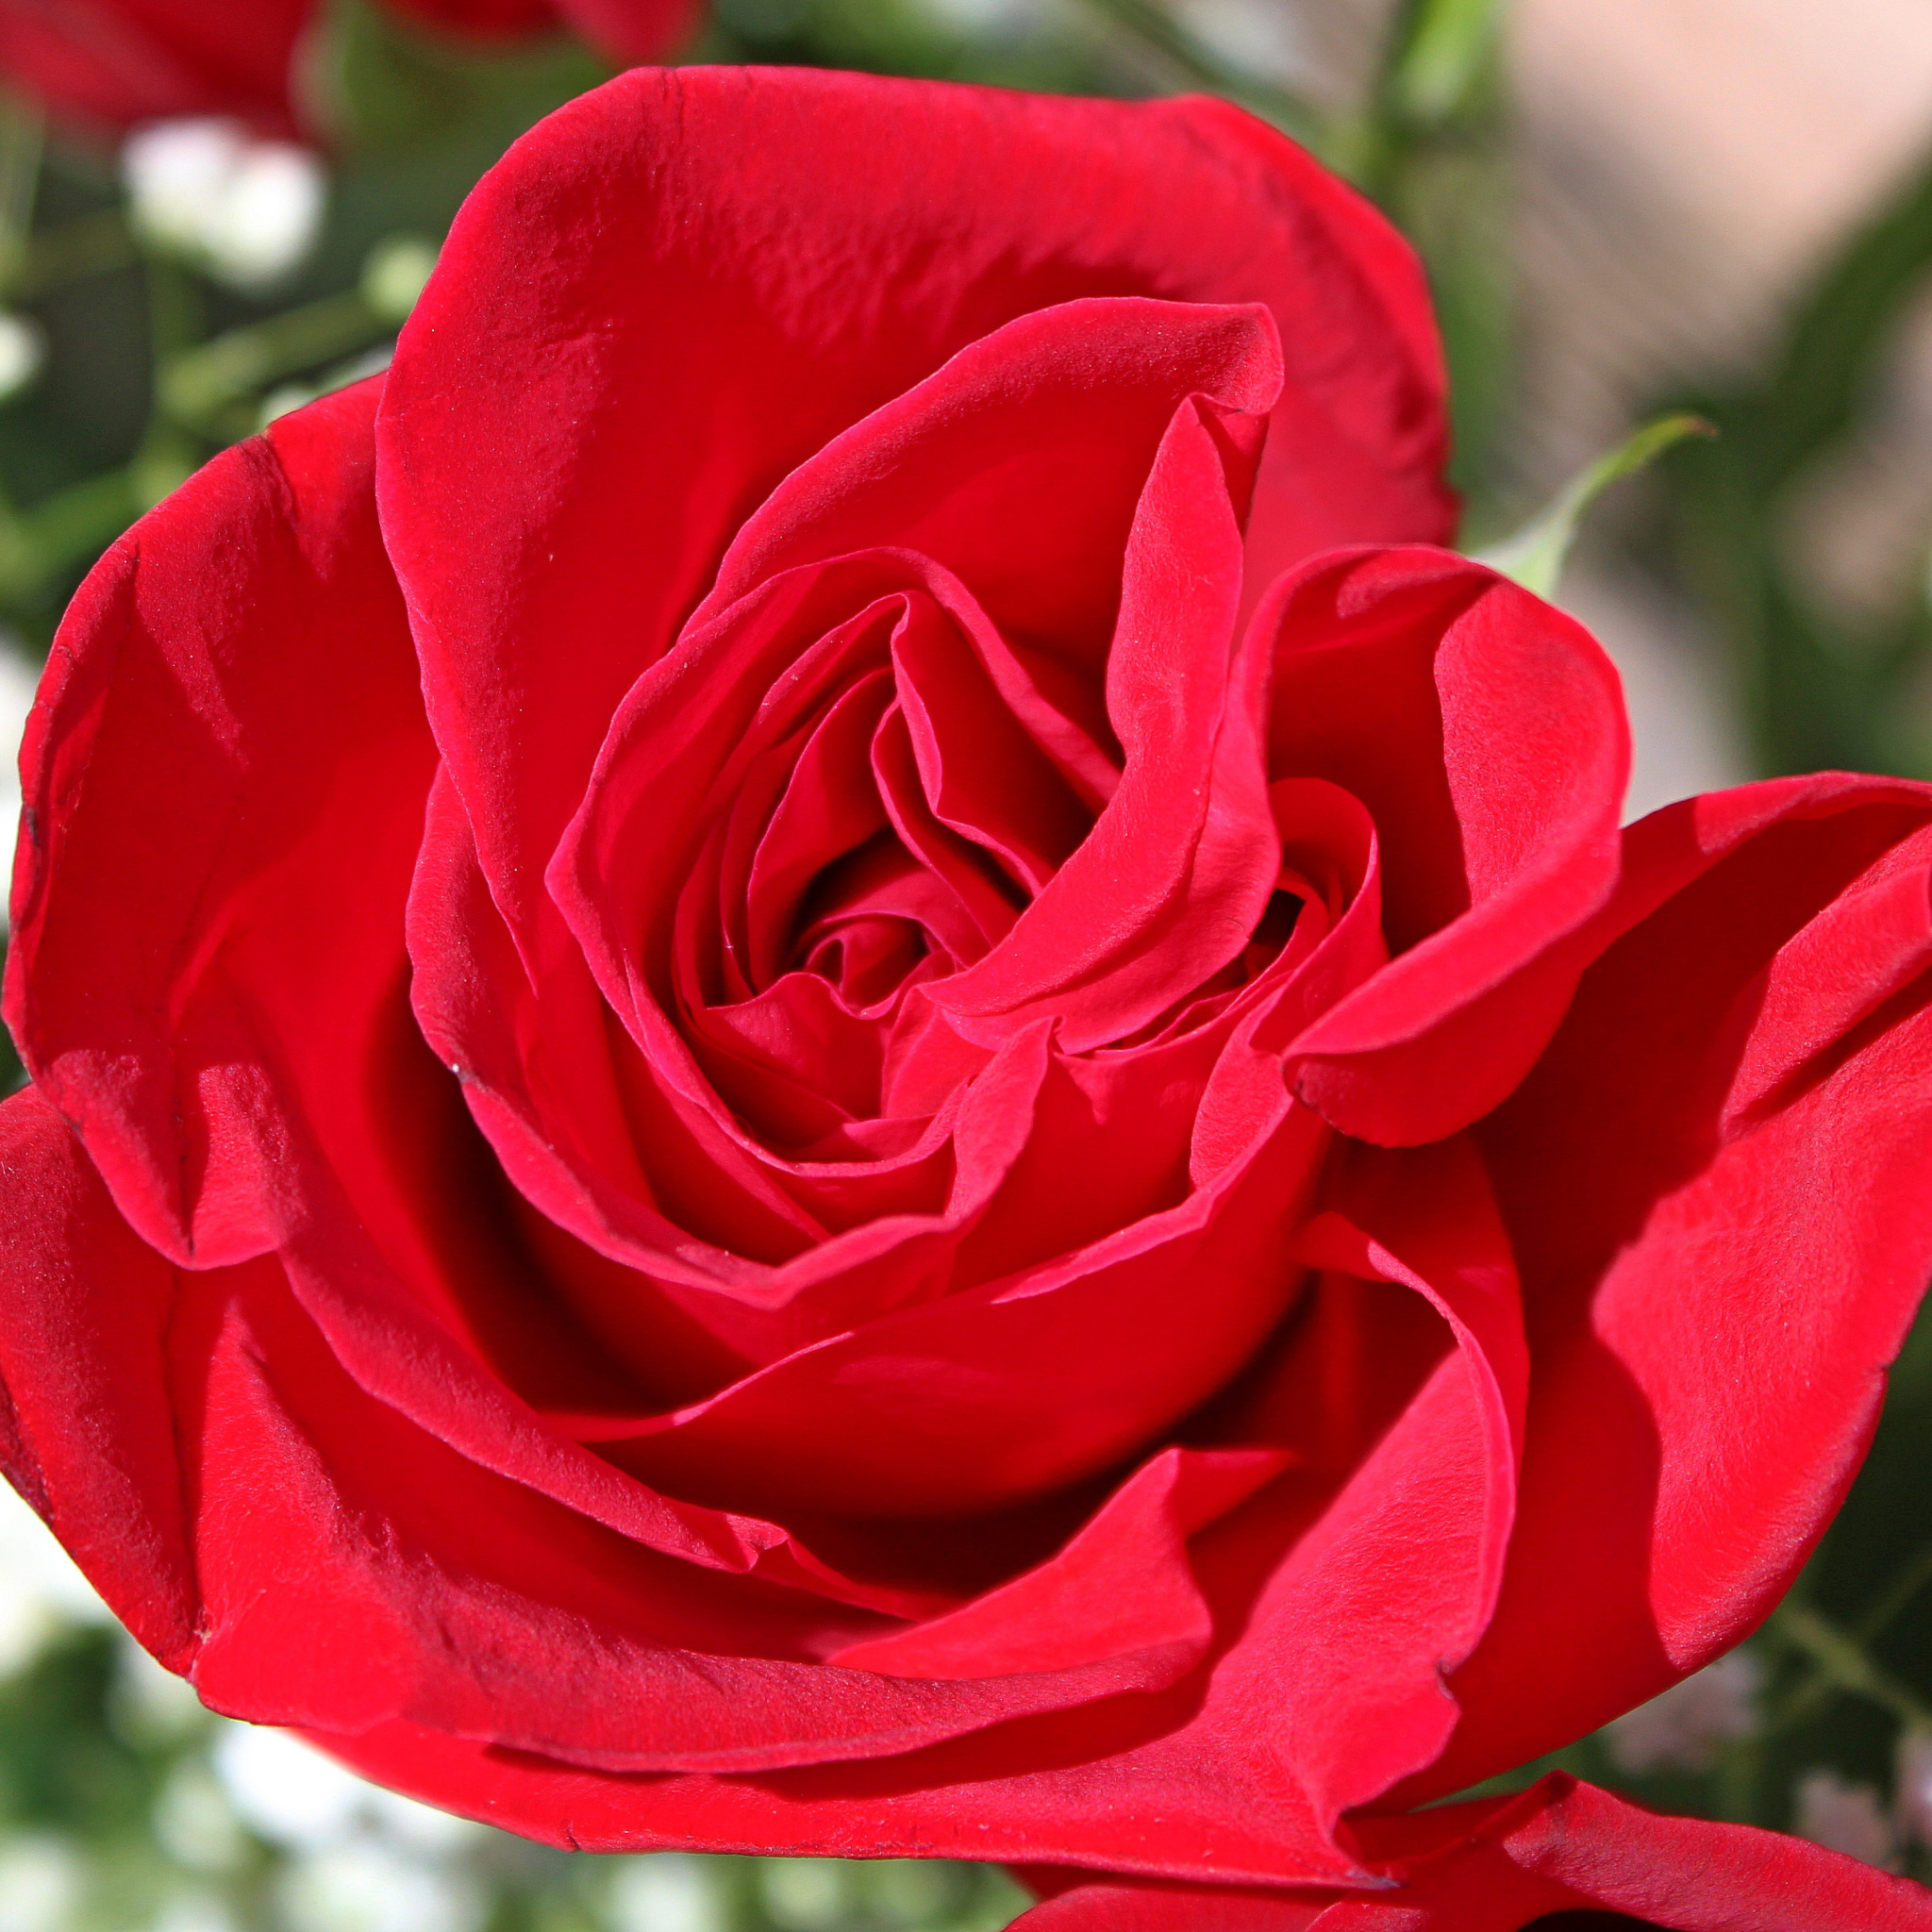 Скачать обои Макро, Macro, Red rose, Красная роза, раздел цветы в разрешени...